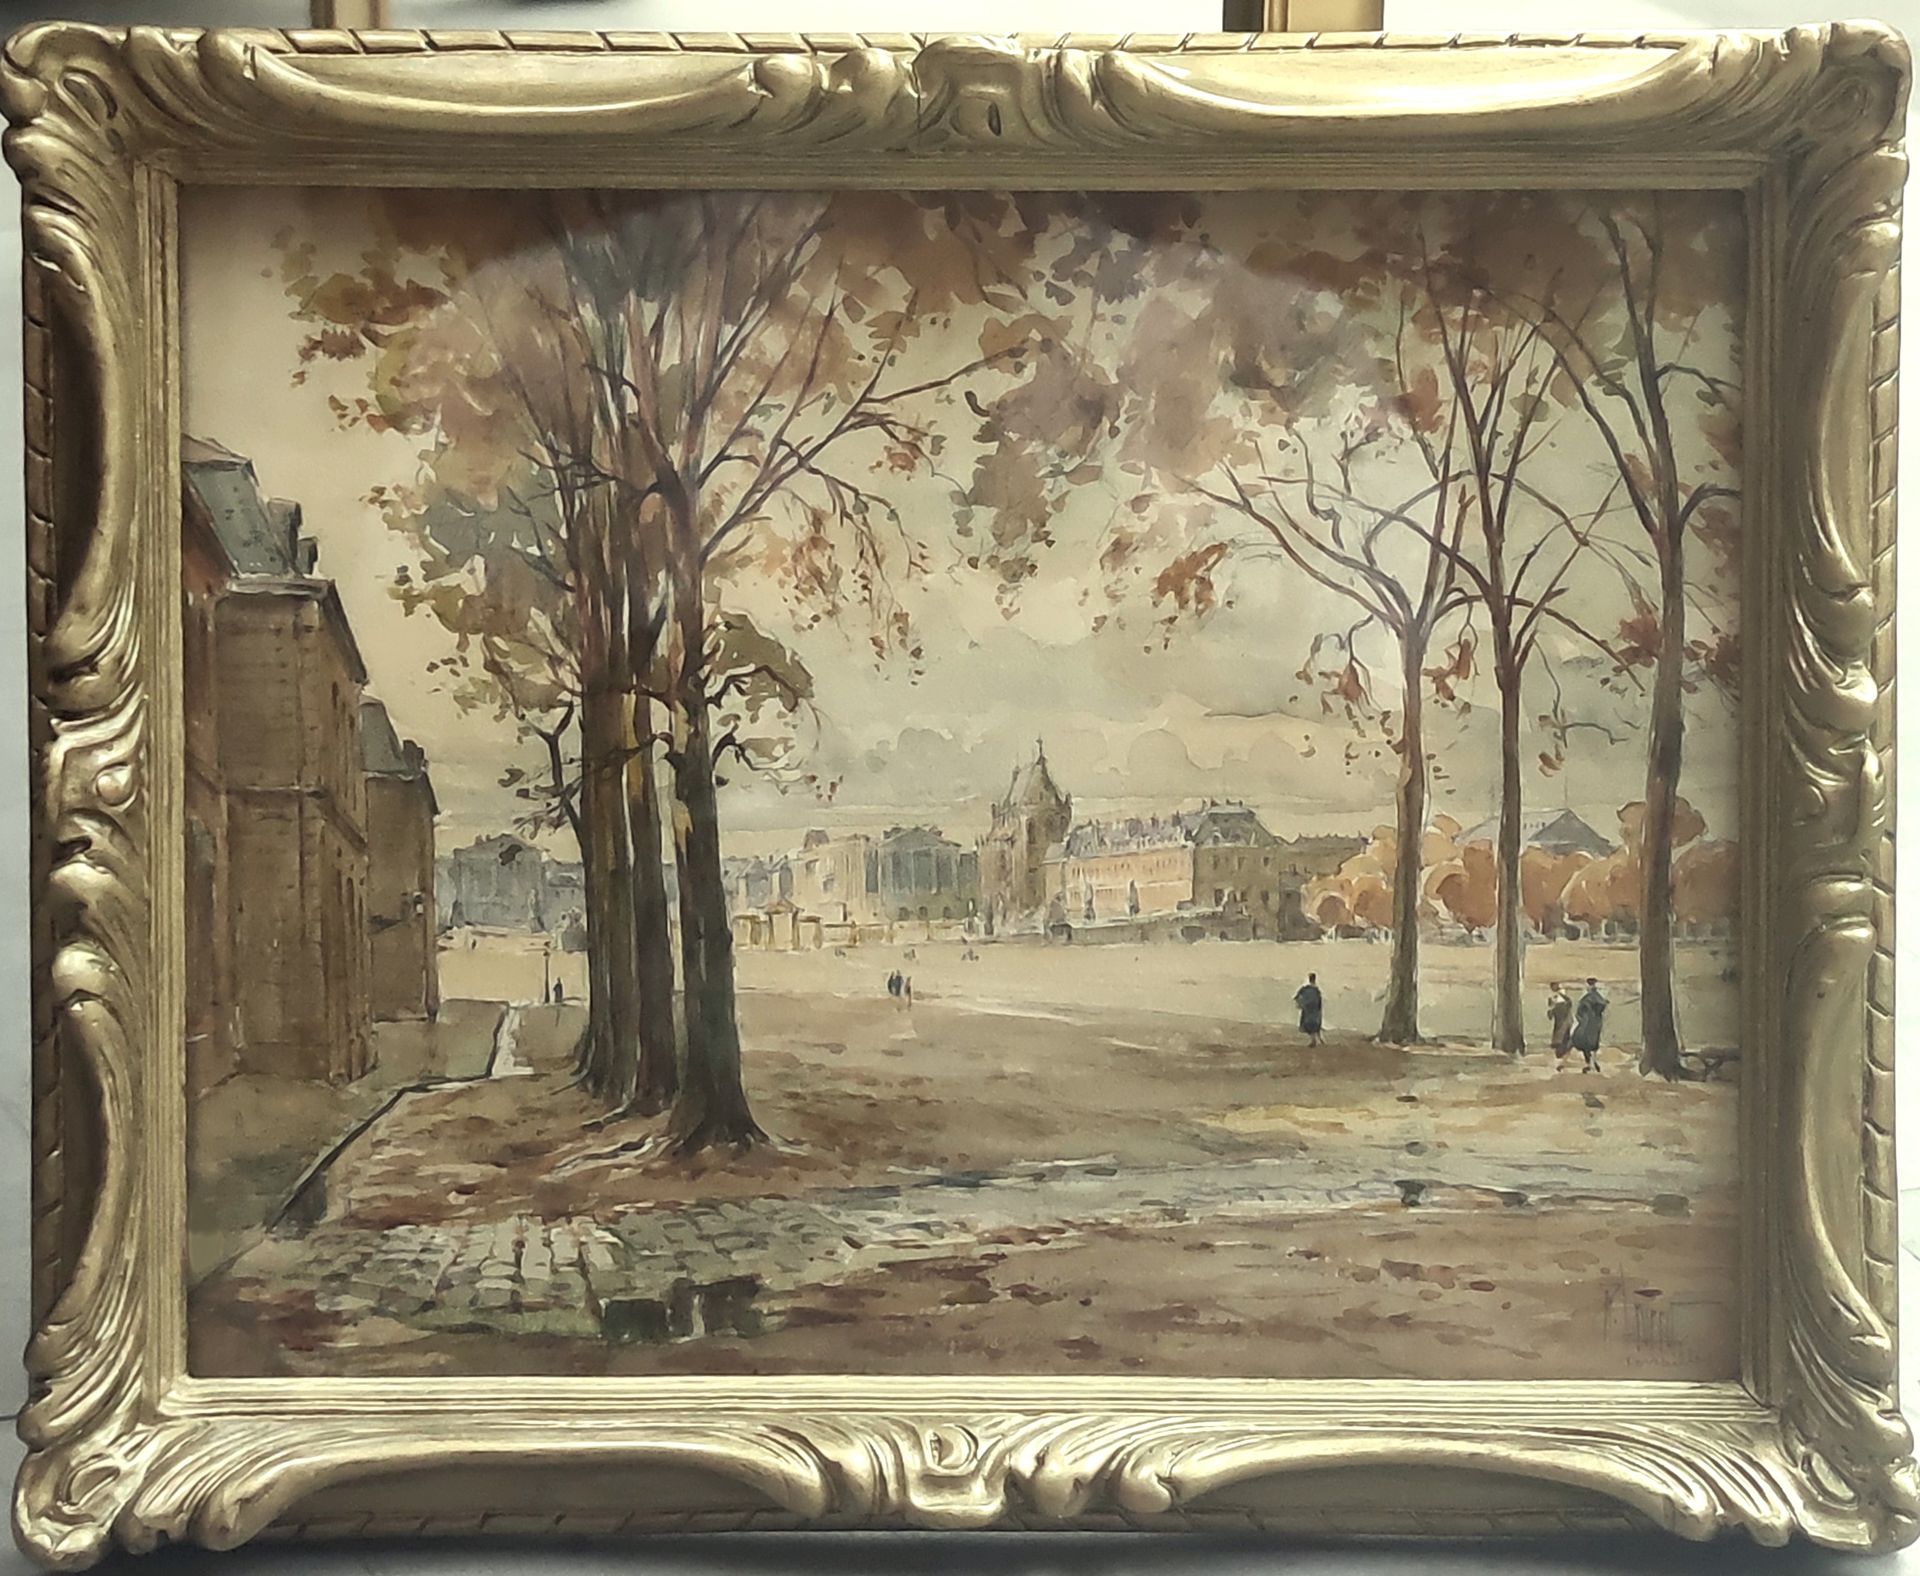 Null 
勒内-莱维德 (1872-1938)



凡尔赛宫的入口景观

右下角有签名的水彩画

见图：24 x 31厘米，带框